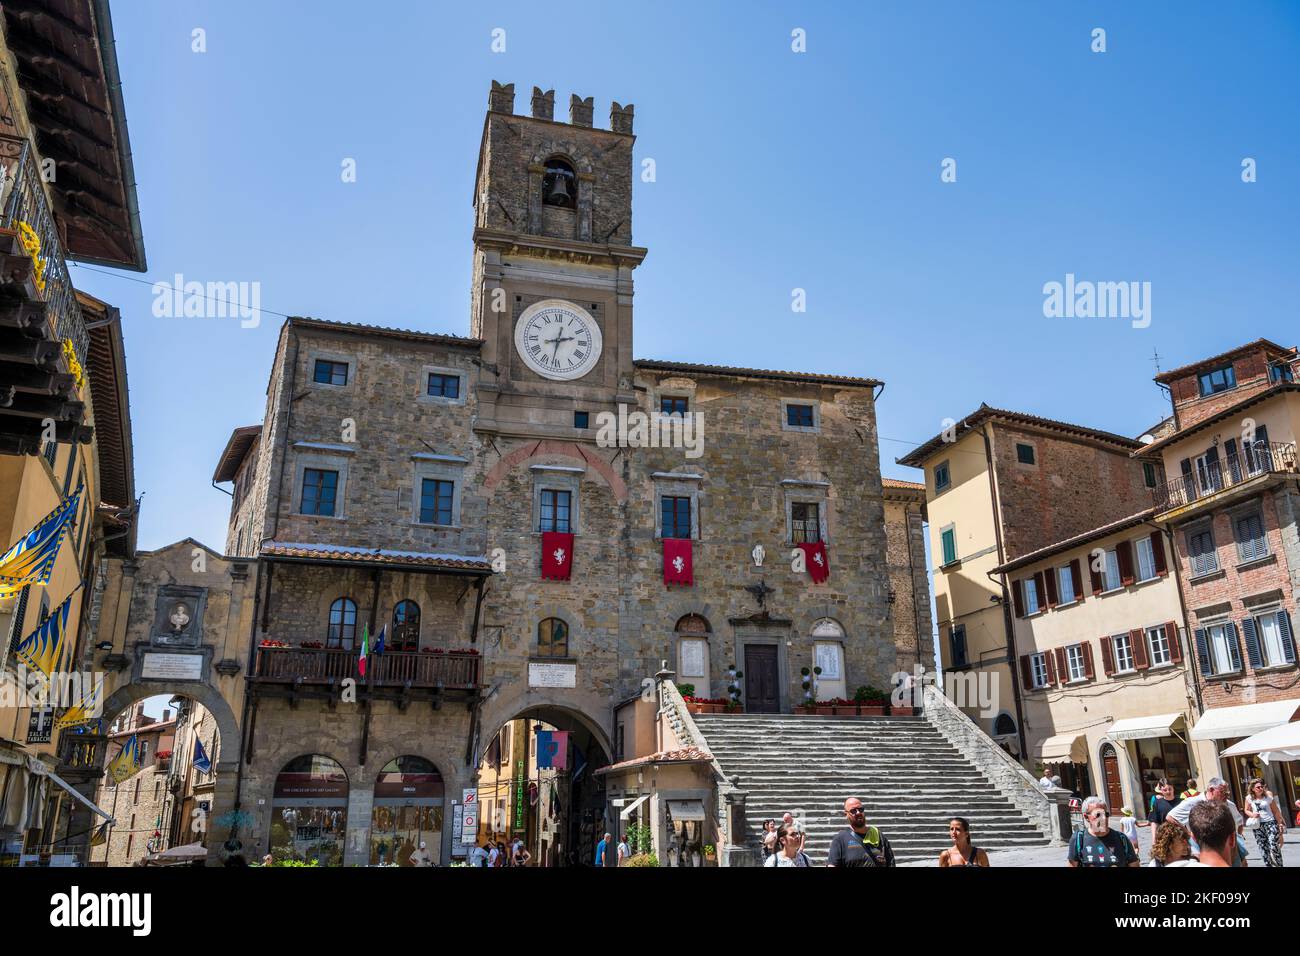 Palazzo Comunale (Town Hall) on Piazza della Repubblica in hilltop town of Cortona in Tuscany, Italy Stock Photo